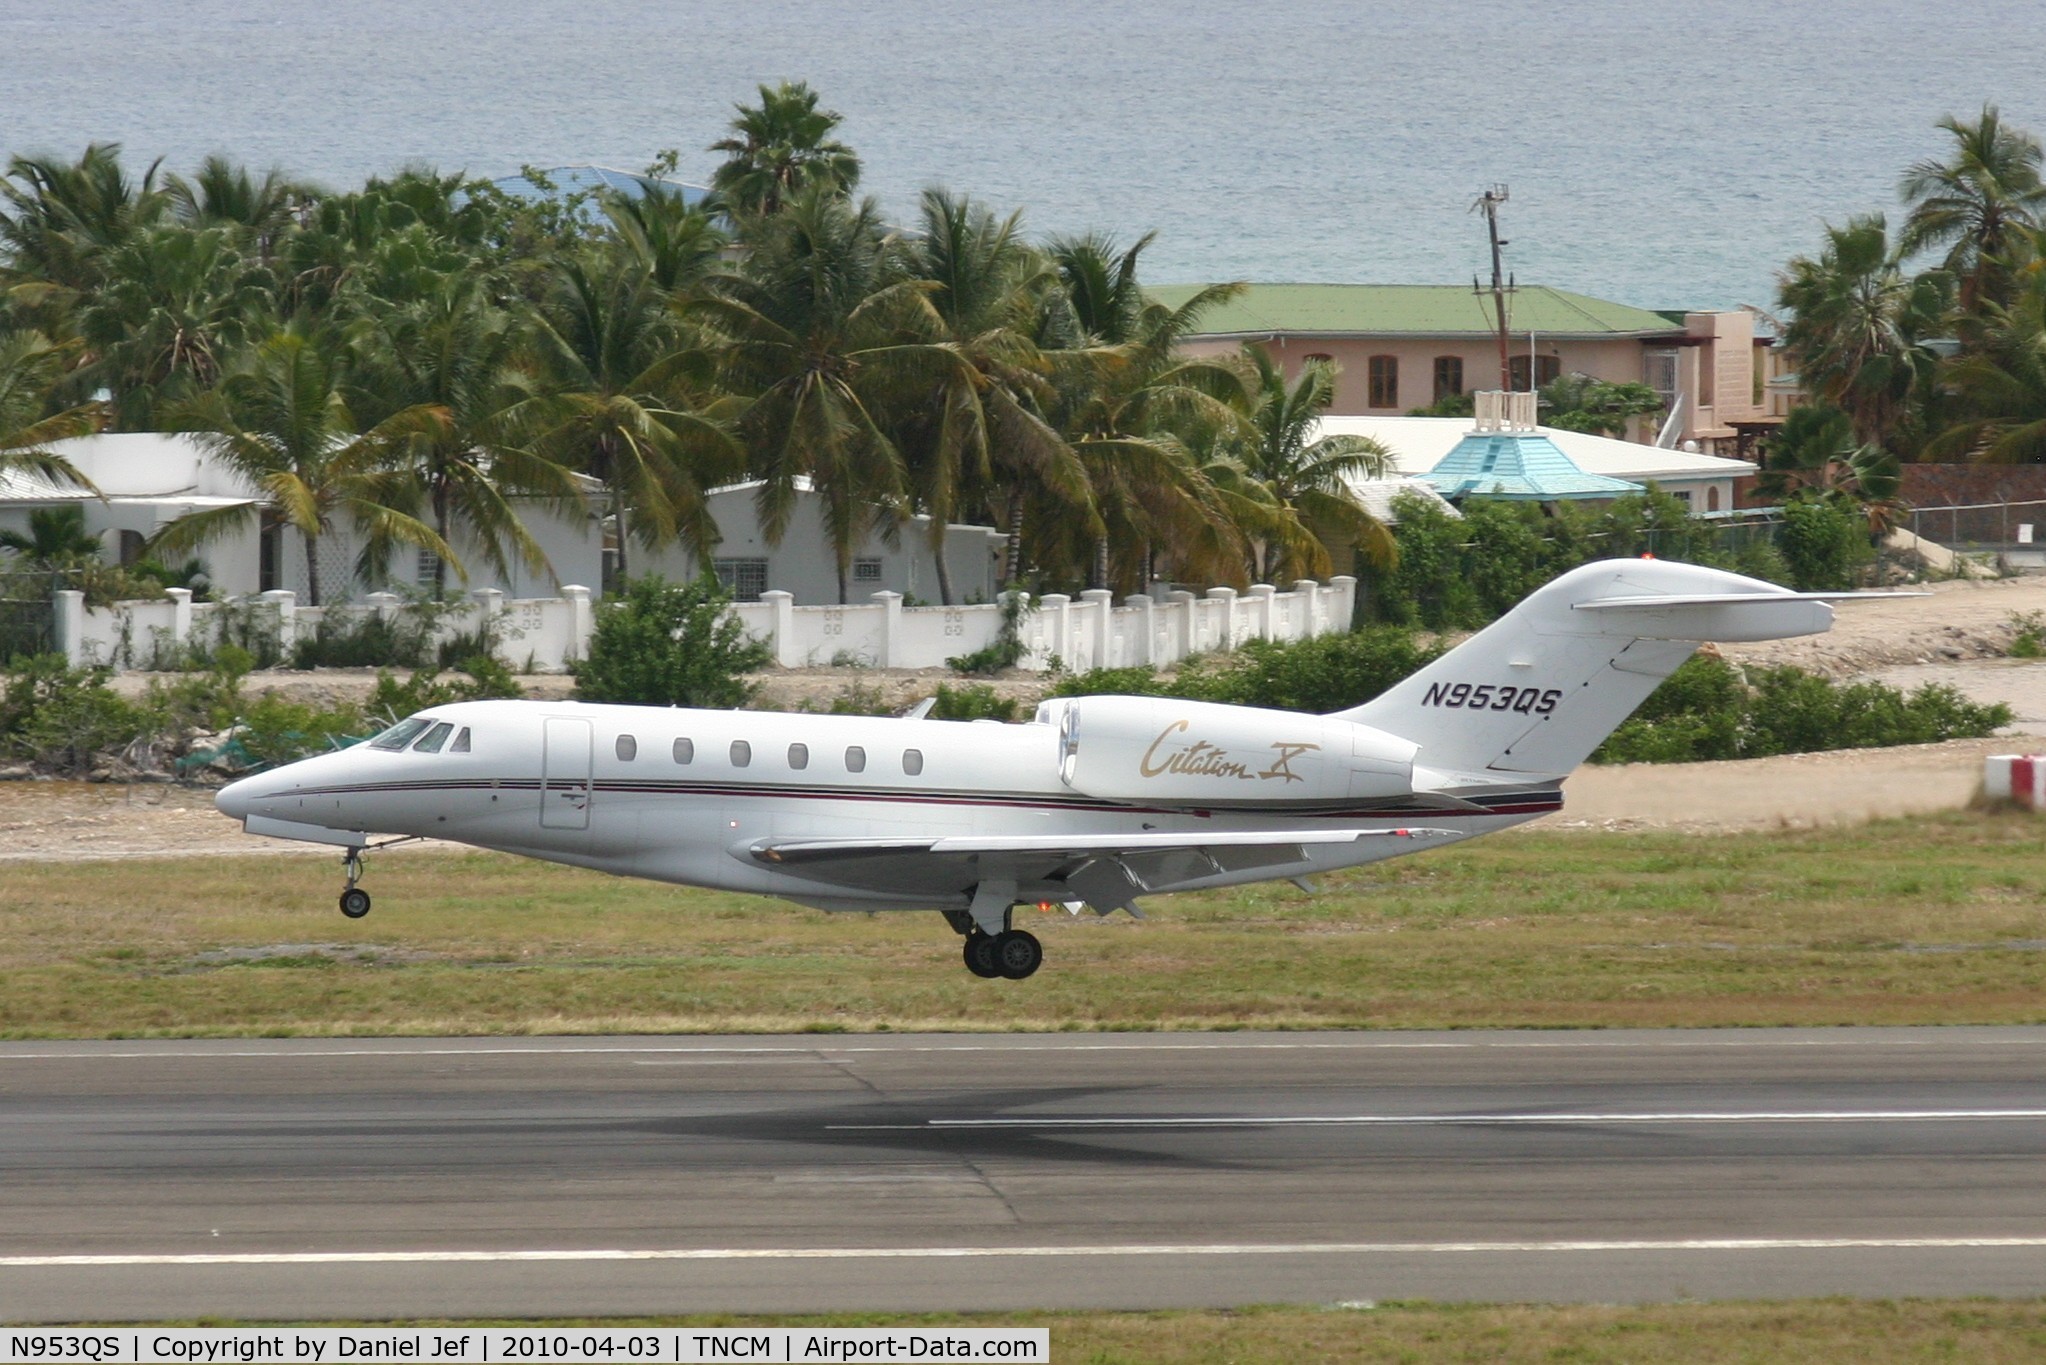 N953QS, 2001 Cessna 750 Citation X Citation X C/N 750-0153, N953QS landing at TNCM runway 10